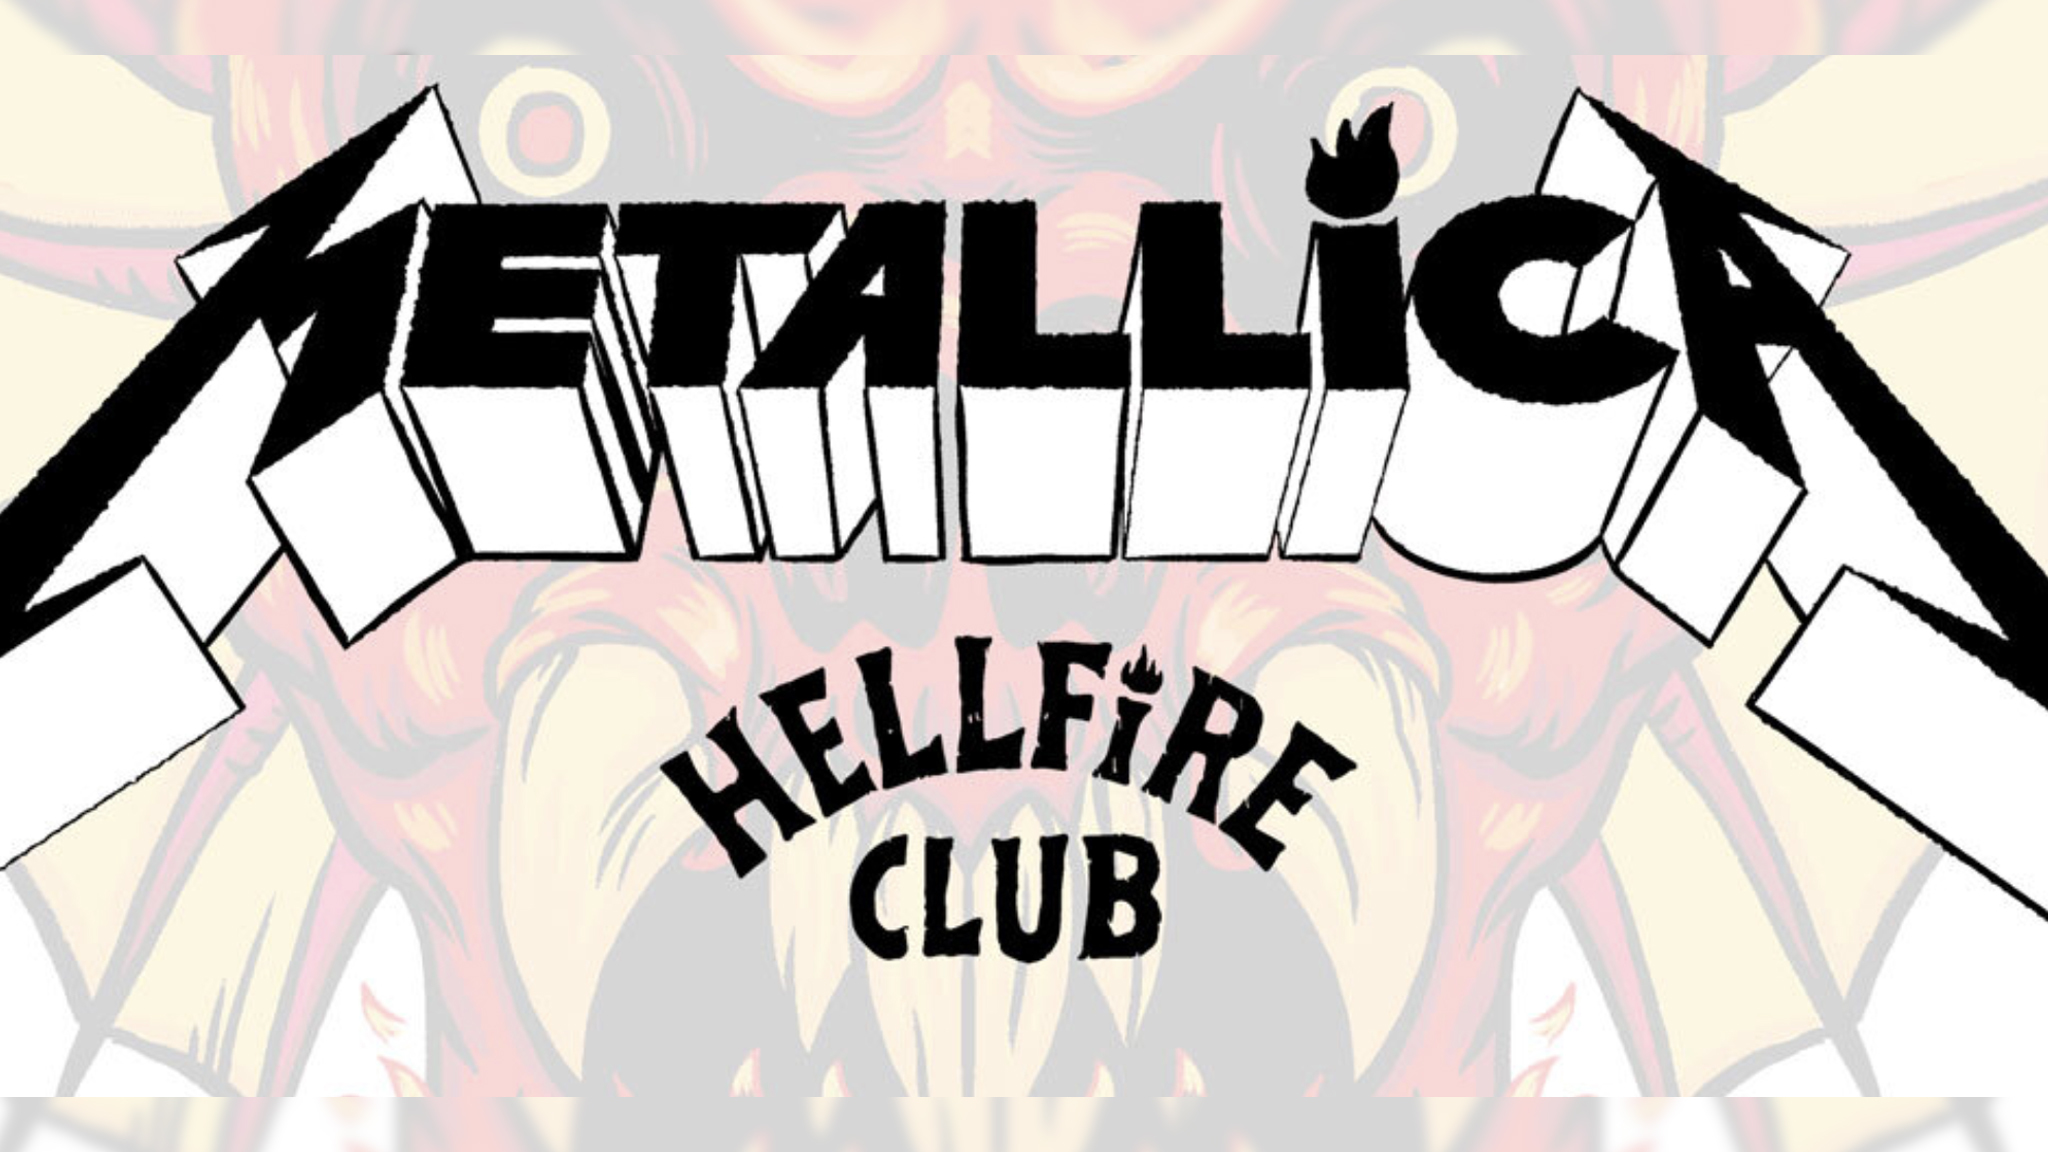 Netflix Stranger Things Hellfire Club Logo Wallpaper  Resolution1354x1250   ID1323997  wallhacom